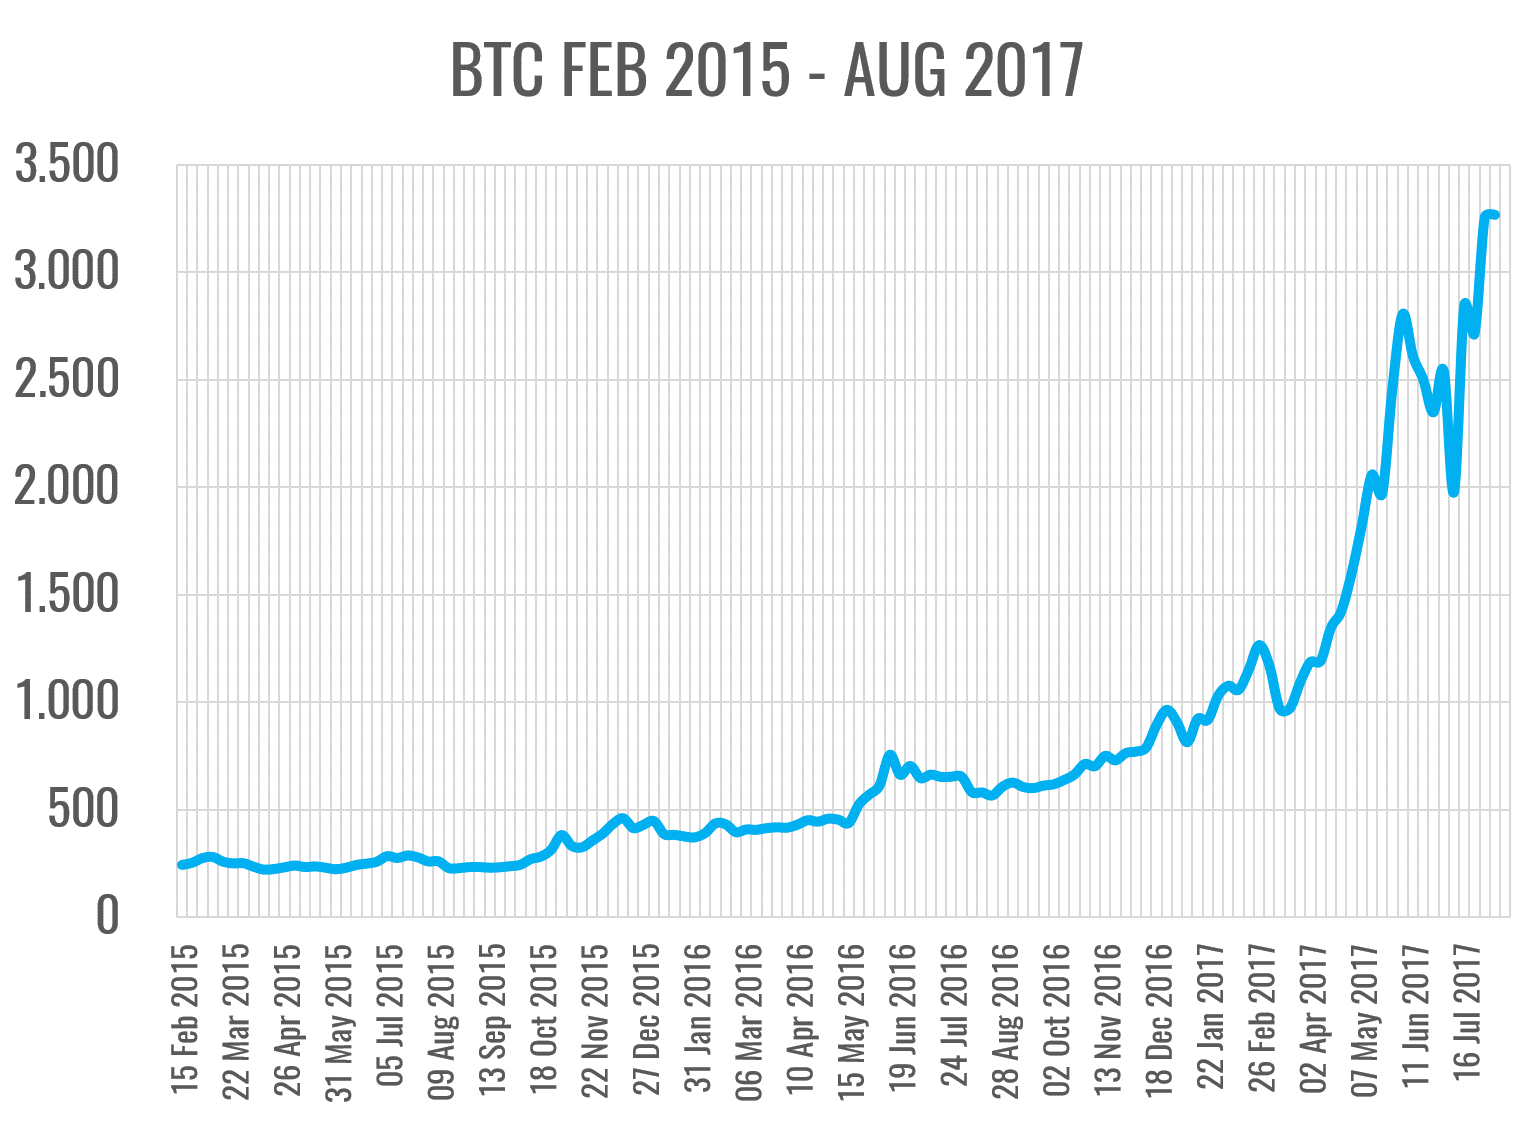 Bitcoin Entwicklung Seit Beginn